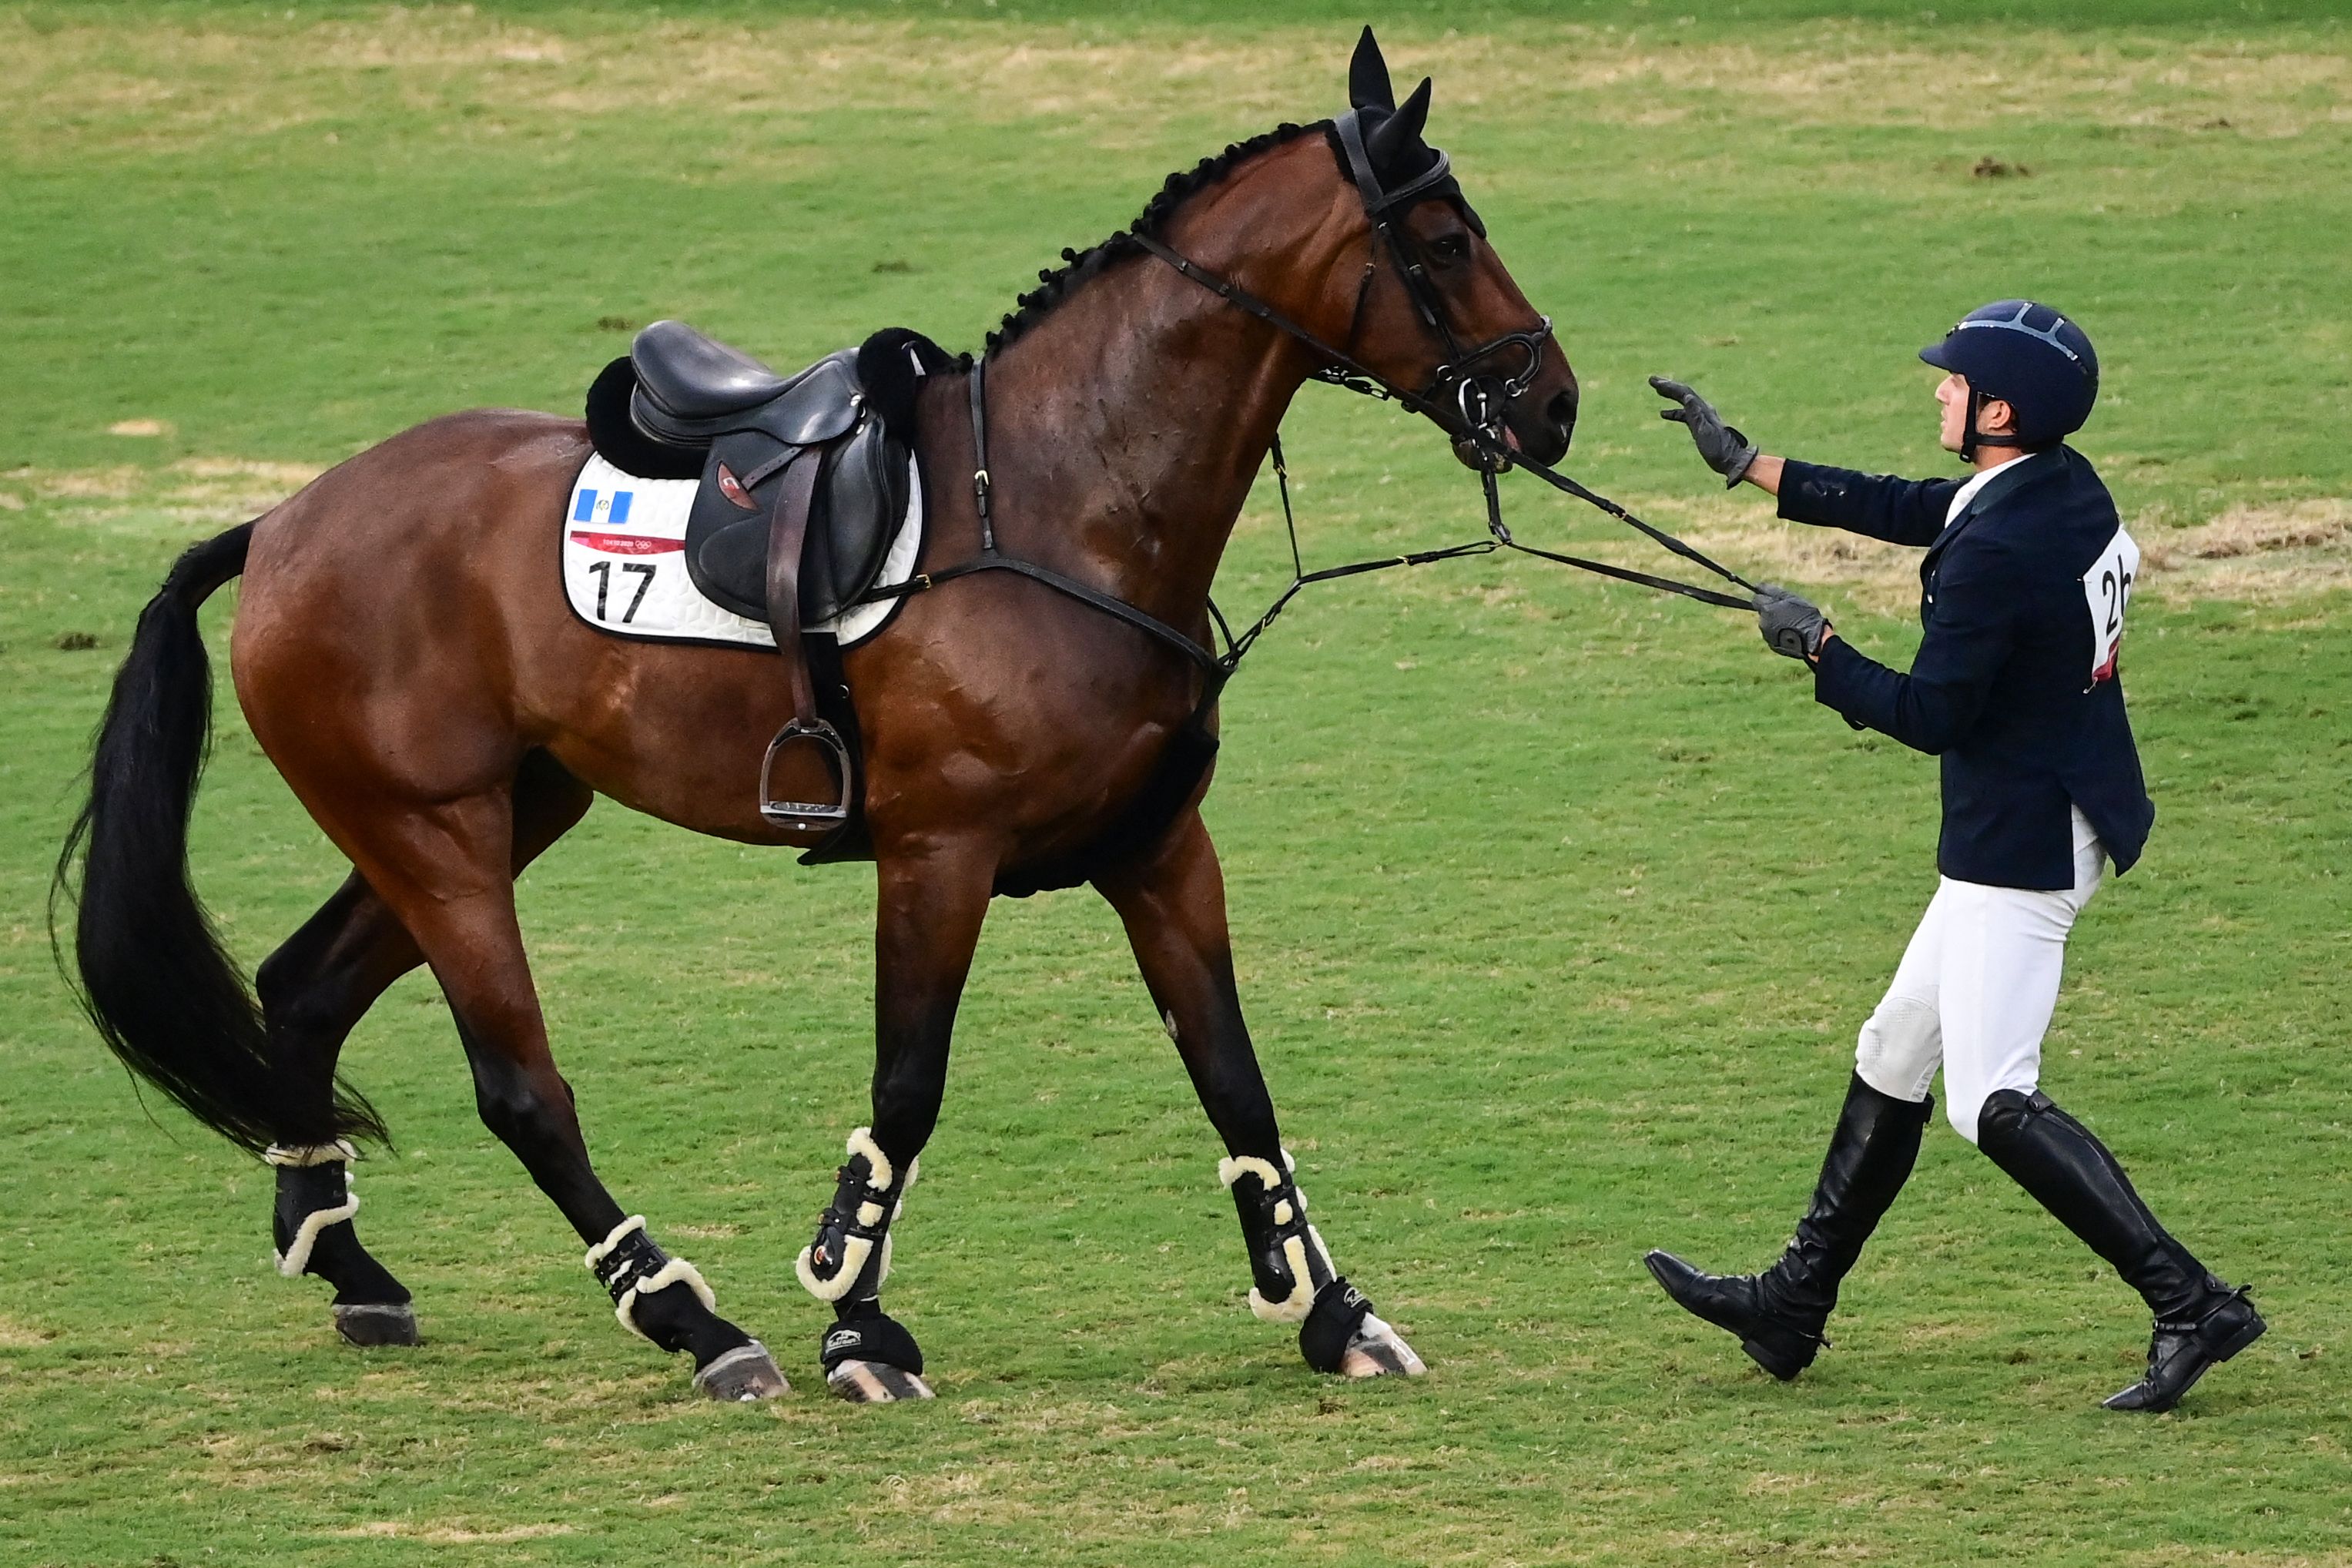 Charles Fernandez habla con el caballo Fluoriet intentando calmarlo luego de caerse durante la competencia individual masculina de equitación. (Foto Prensa Libre: AFP)